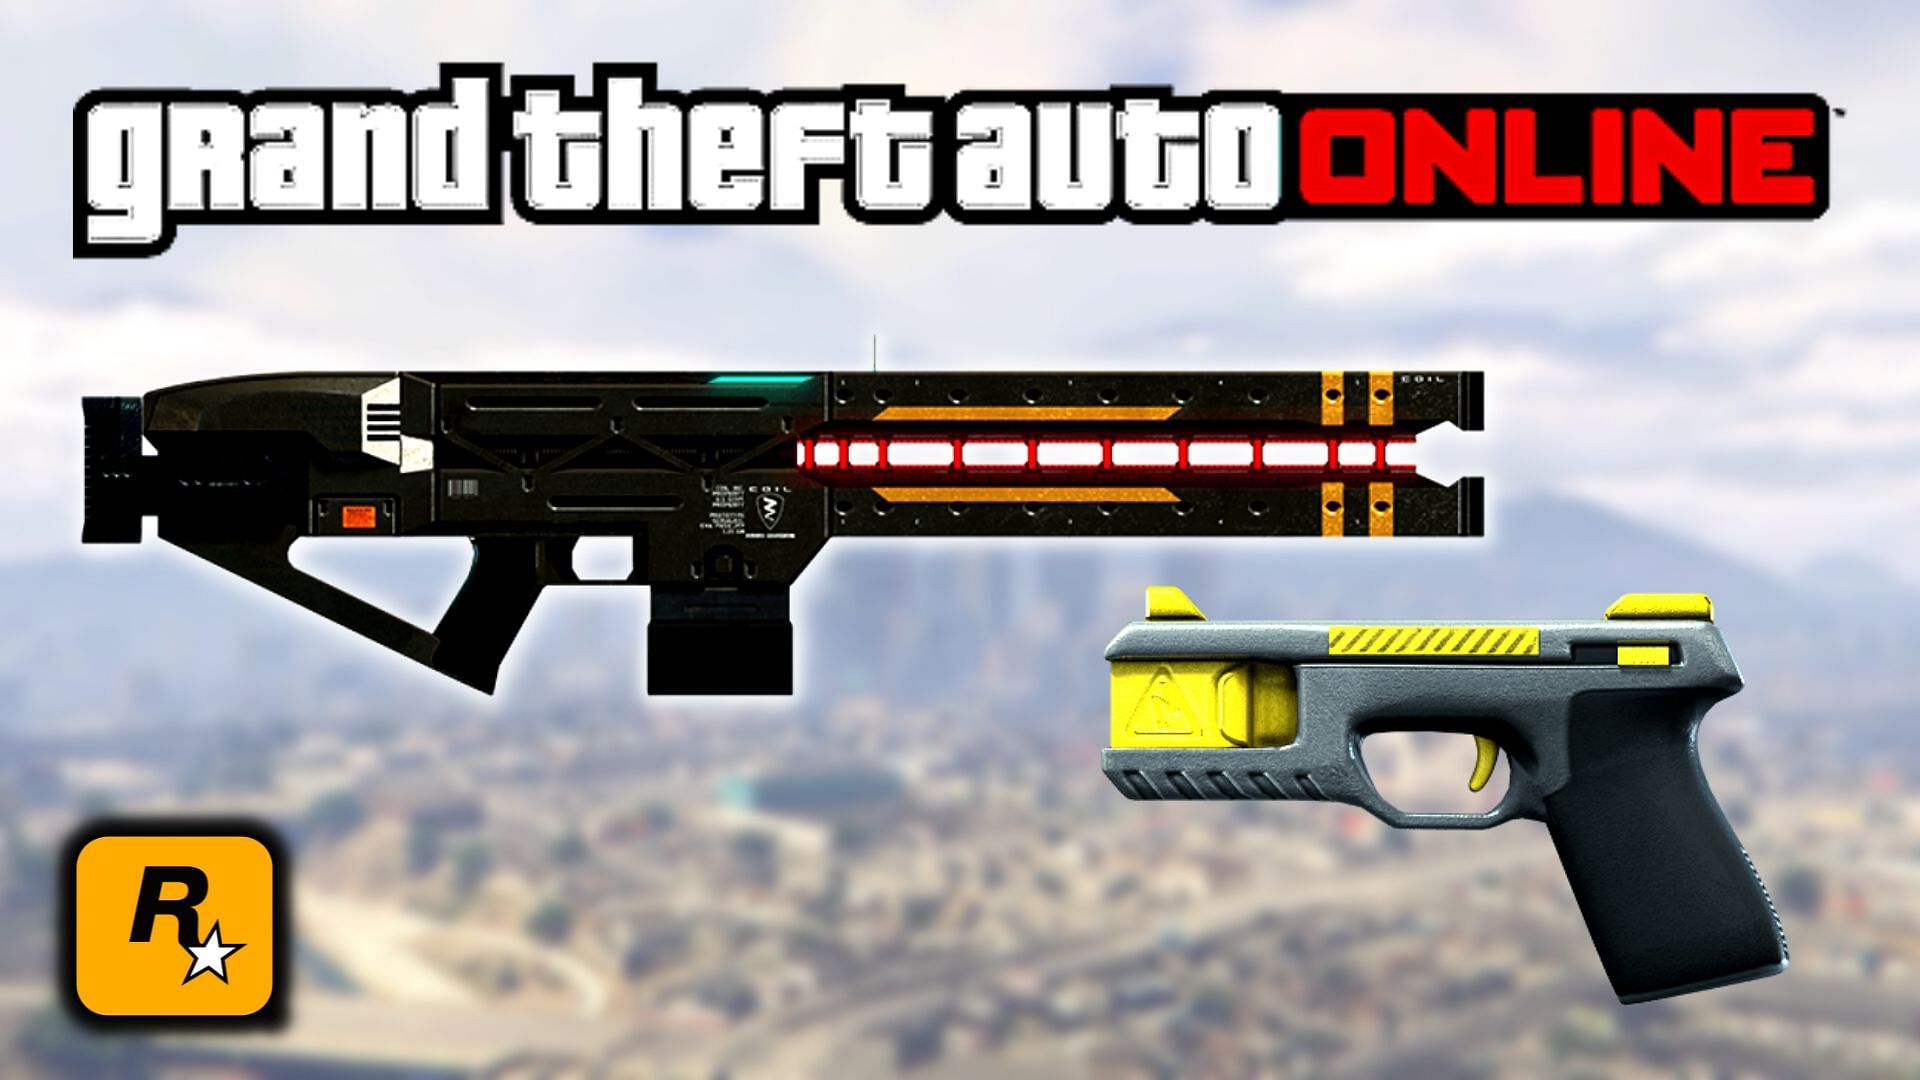 A brief about the Taser Stun Gun and the Railgun in GTA Online (Image via Sportskeeda)